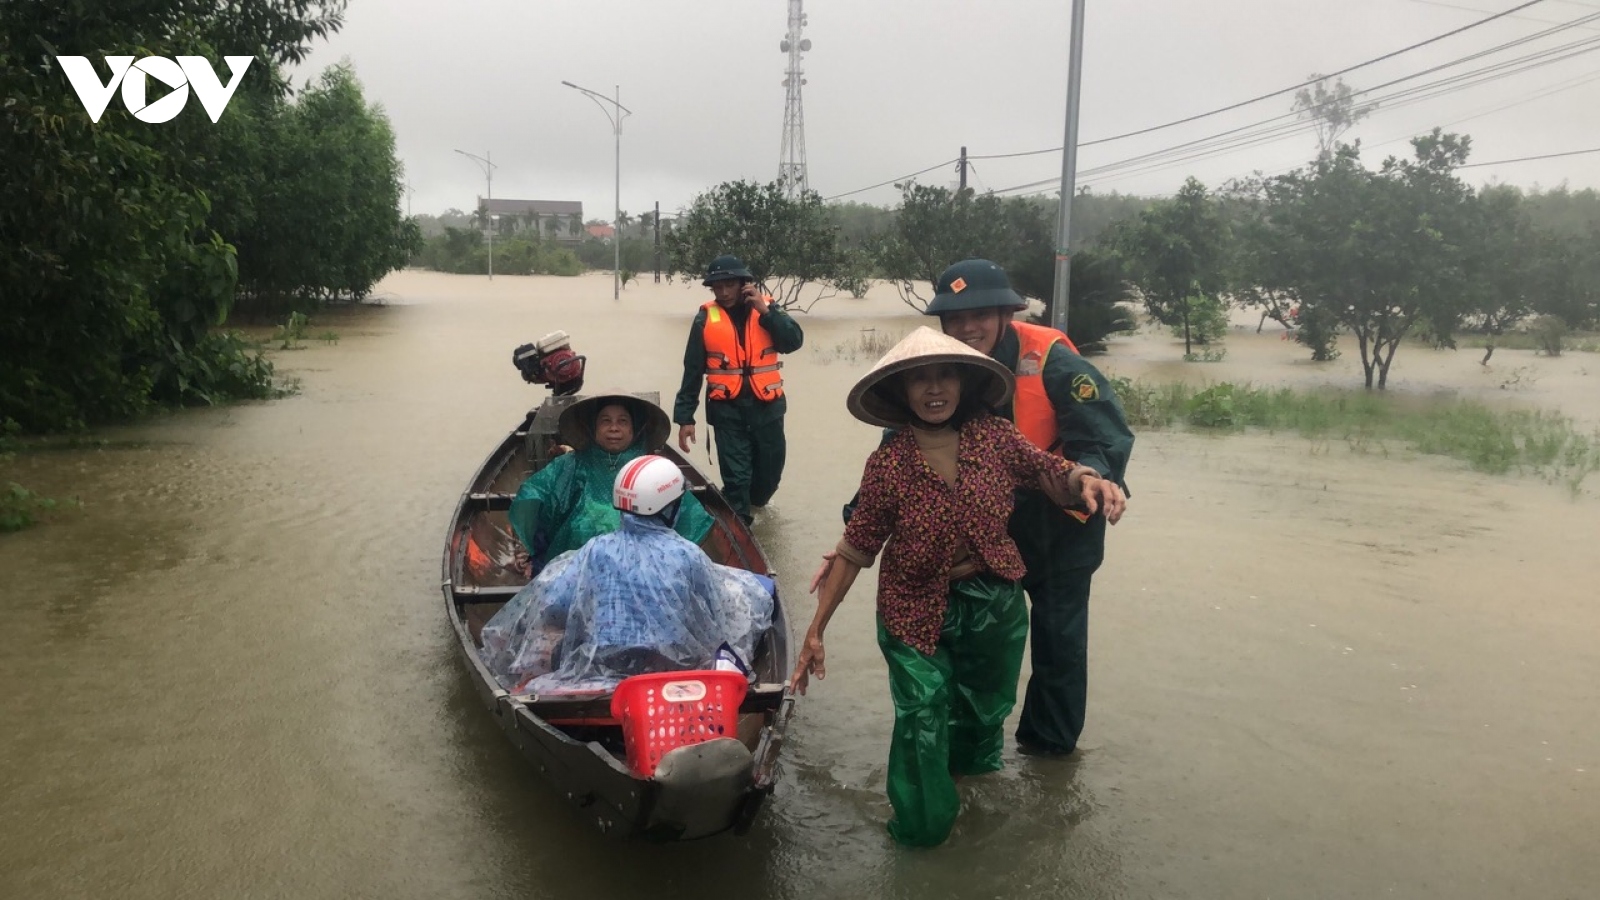 Thừa Thiên Huế: Lật thuyền giữa nước lũ chảy xiết, mẹ chết, con gái mất tích